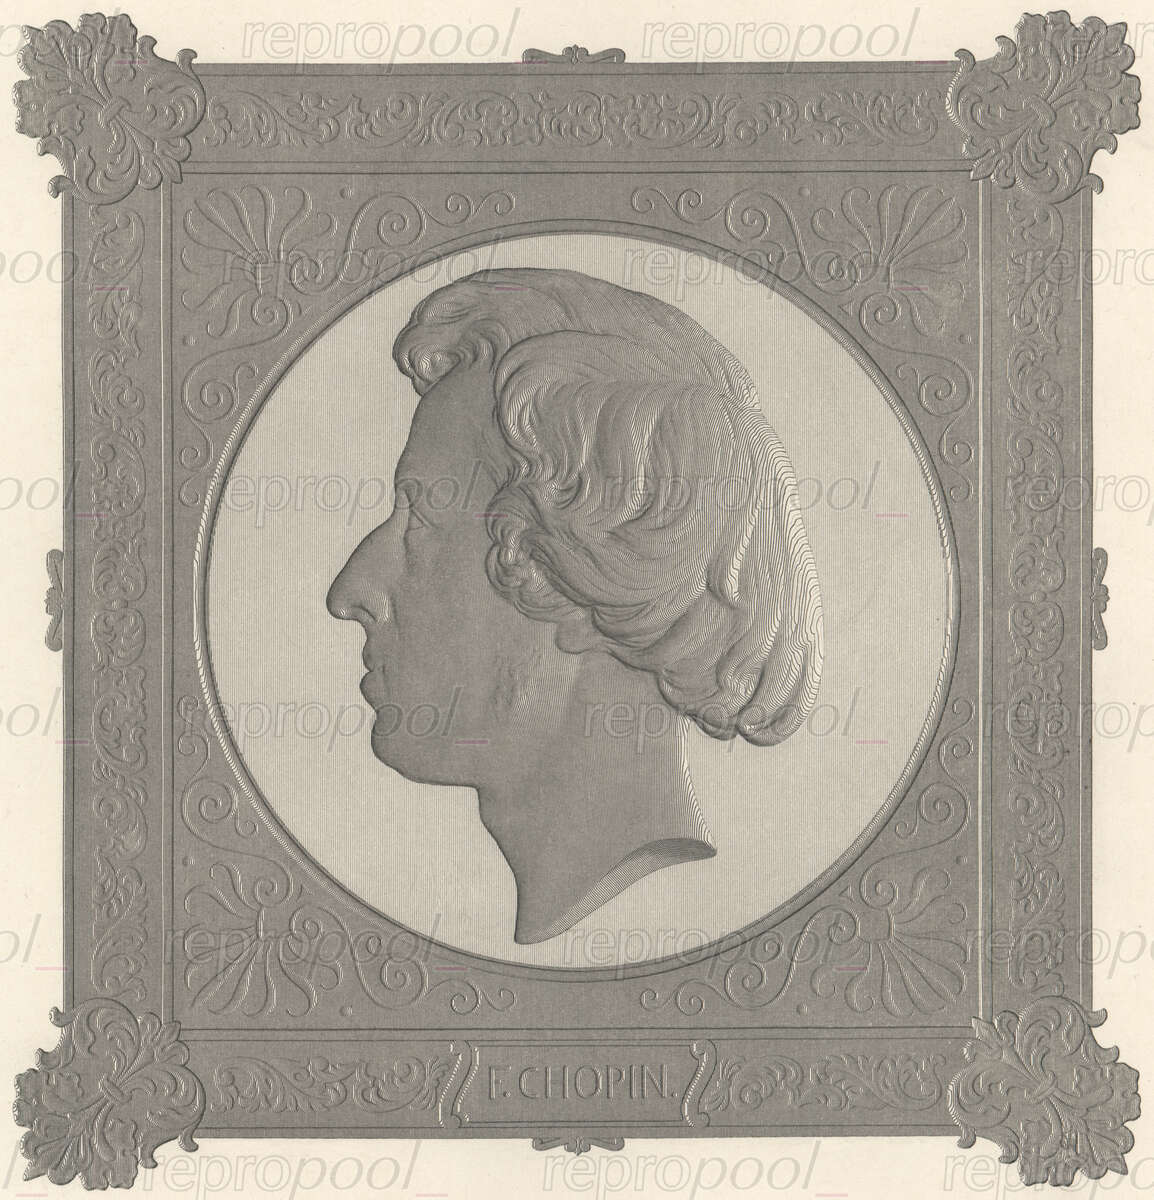 Frédéric Chopin; Radierung: von Friedrich Schauer (1844);<br>nach: Medaille von Jean François Antoine Bovy (1837)